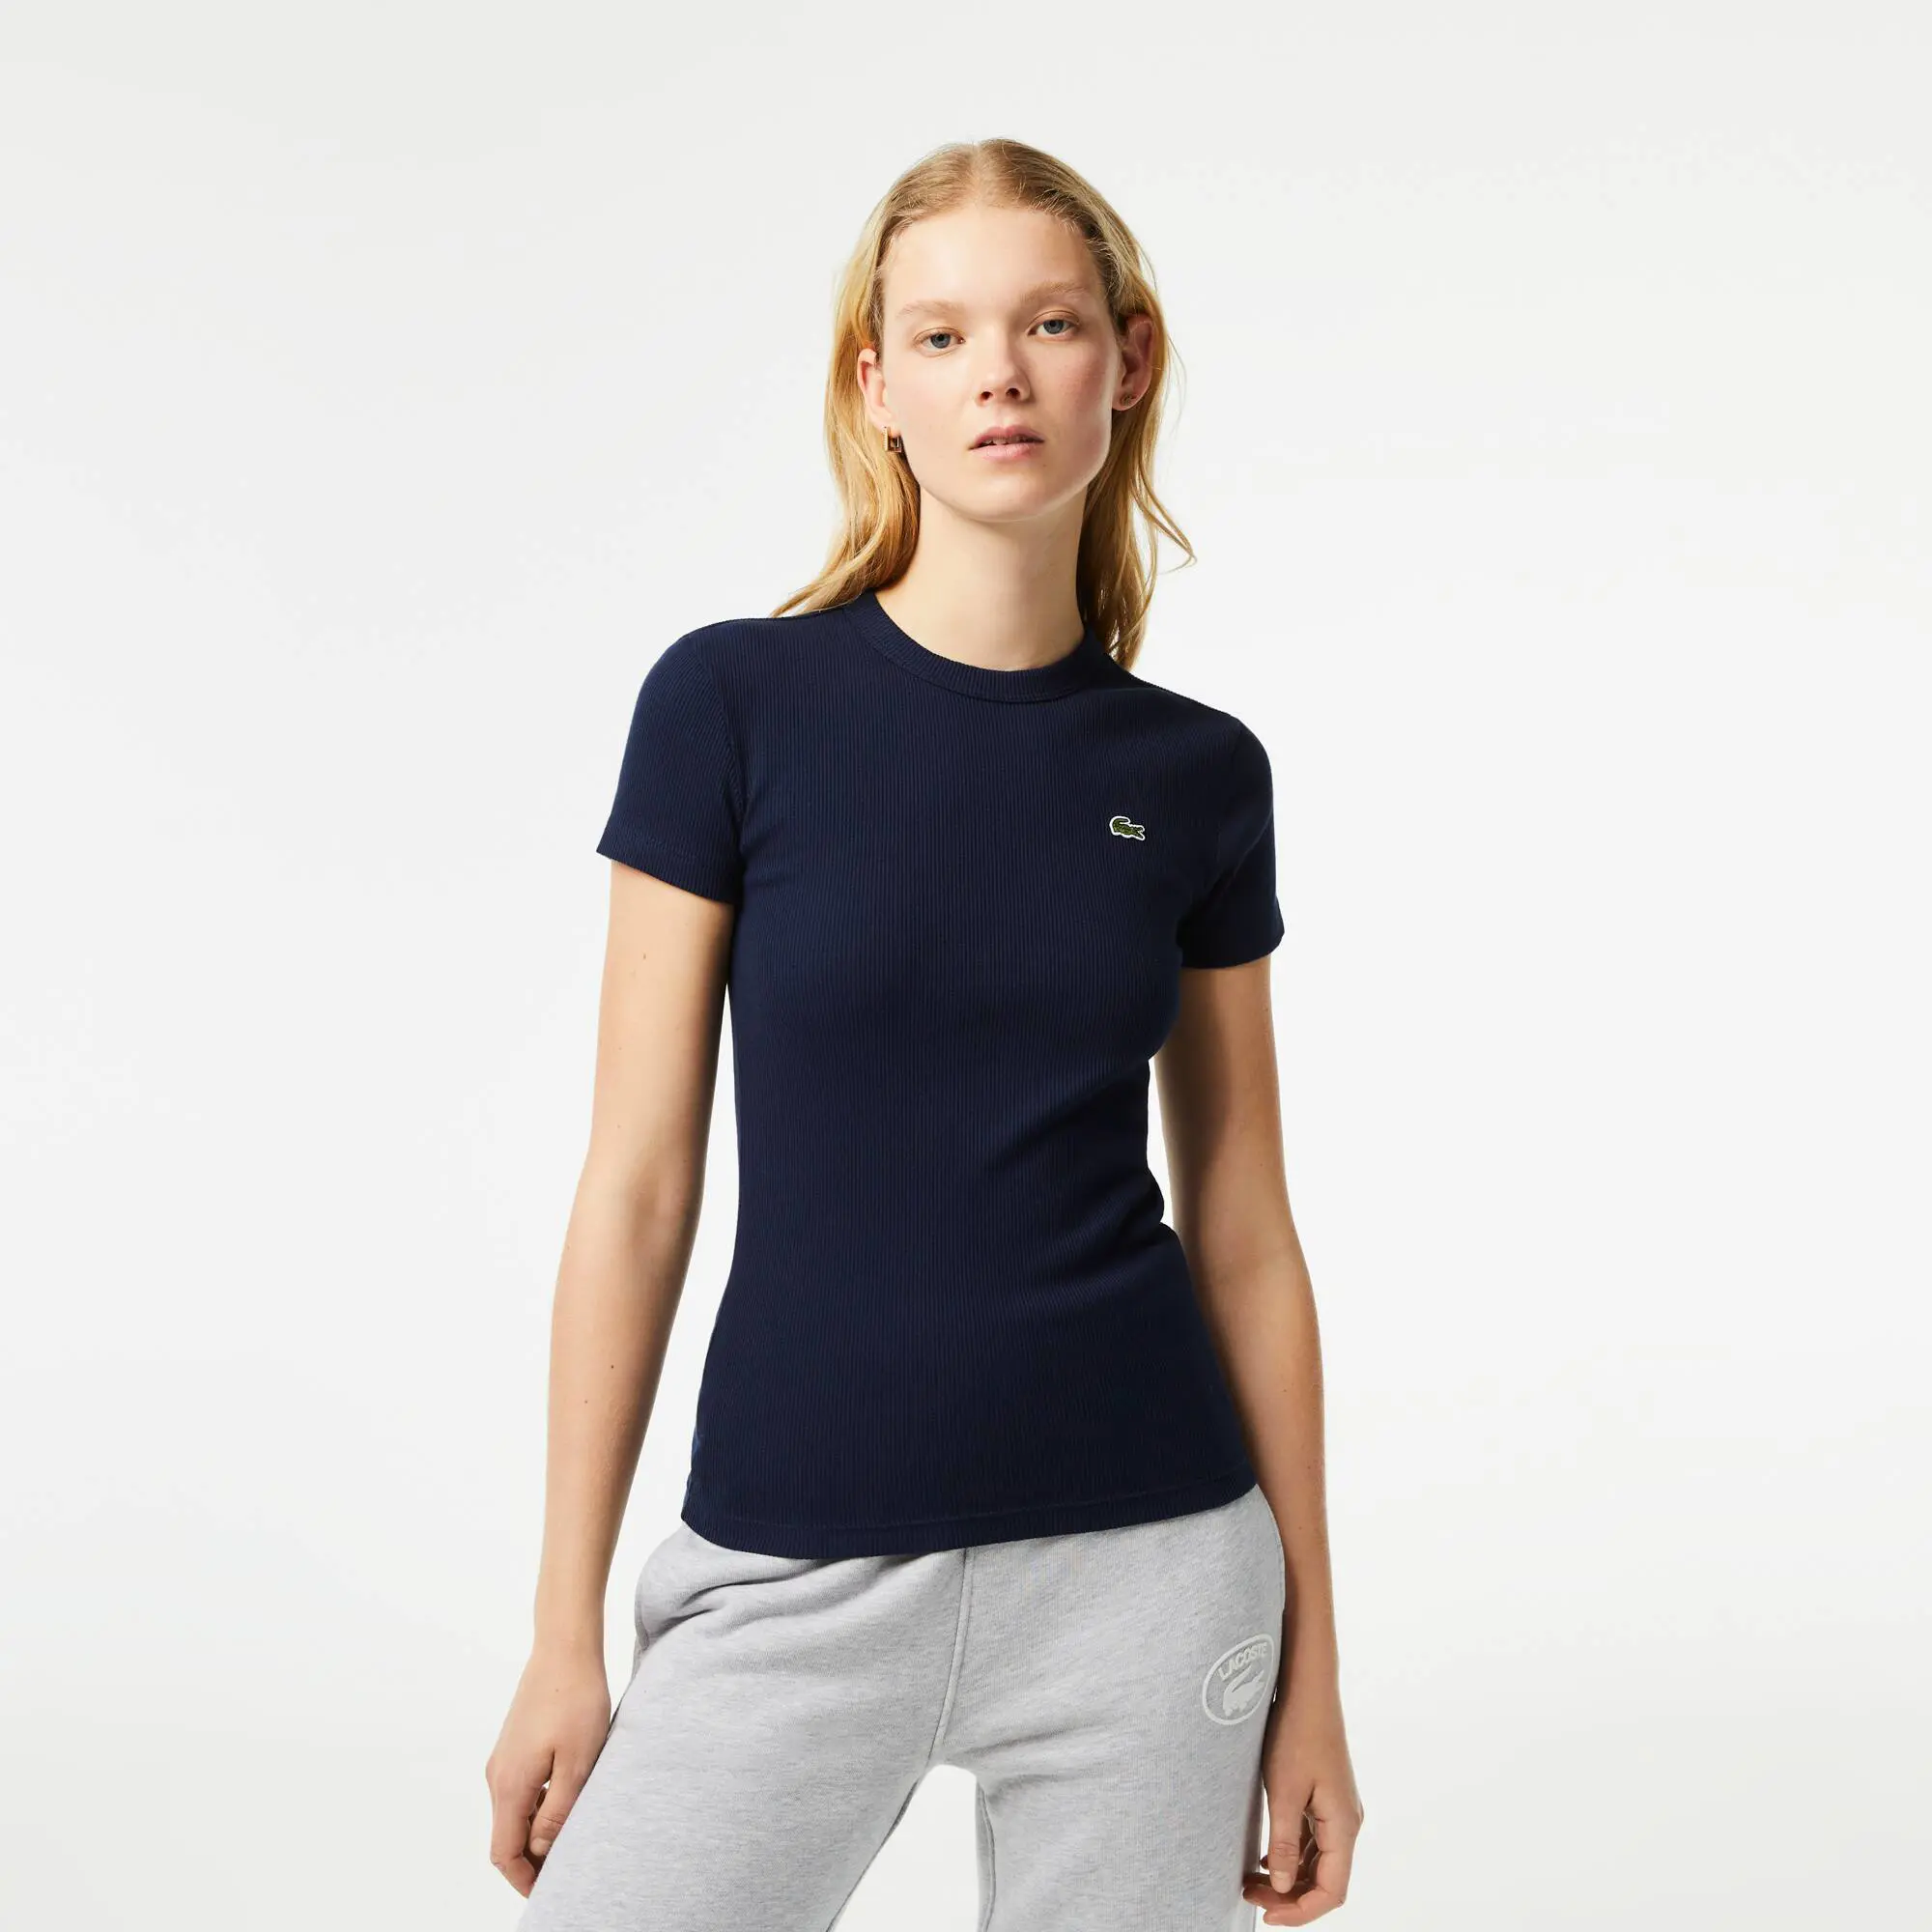 Lacoste Camiseta de mujer slim fit en algodón ecológico. 1